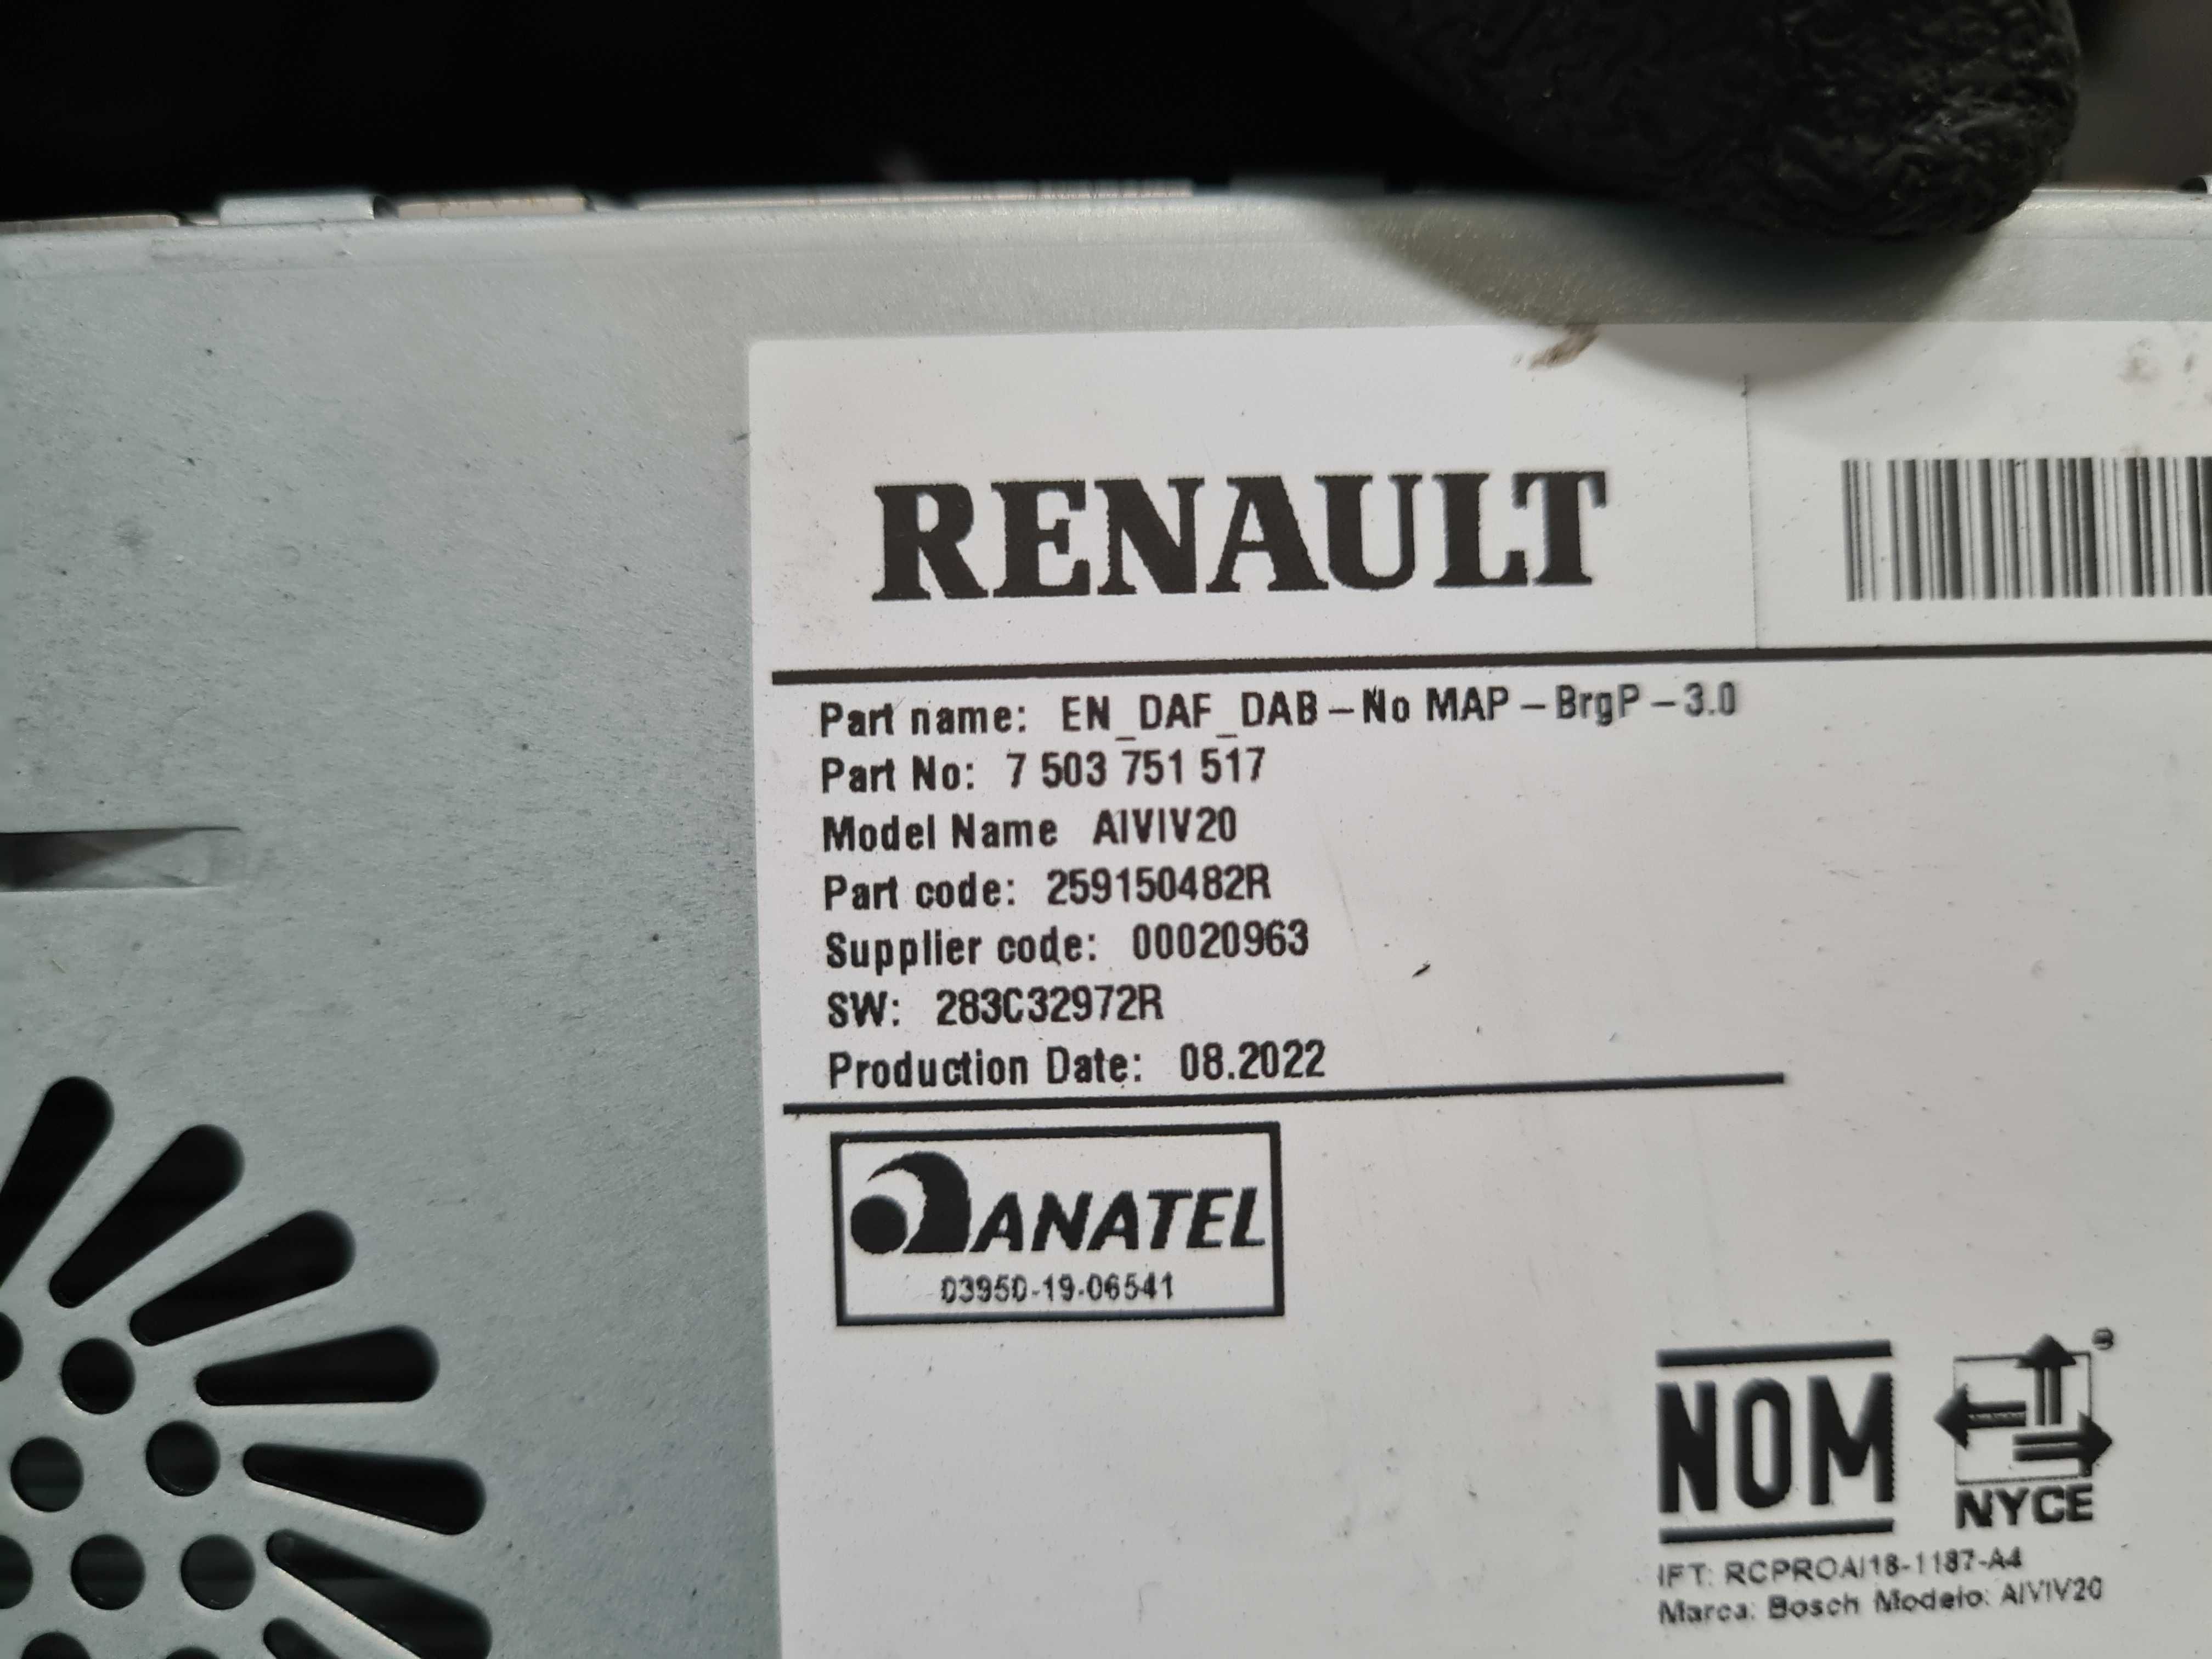 Renault Express Van 23r ekran wyświetlacz radio nawigacja